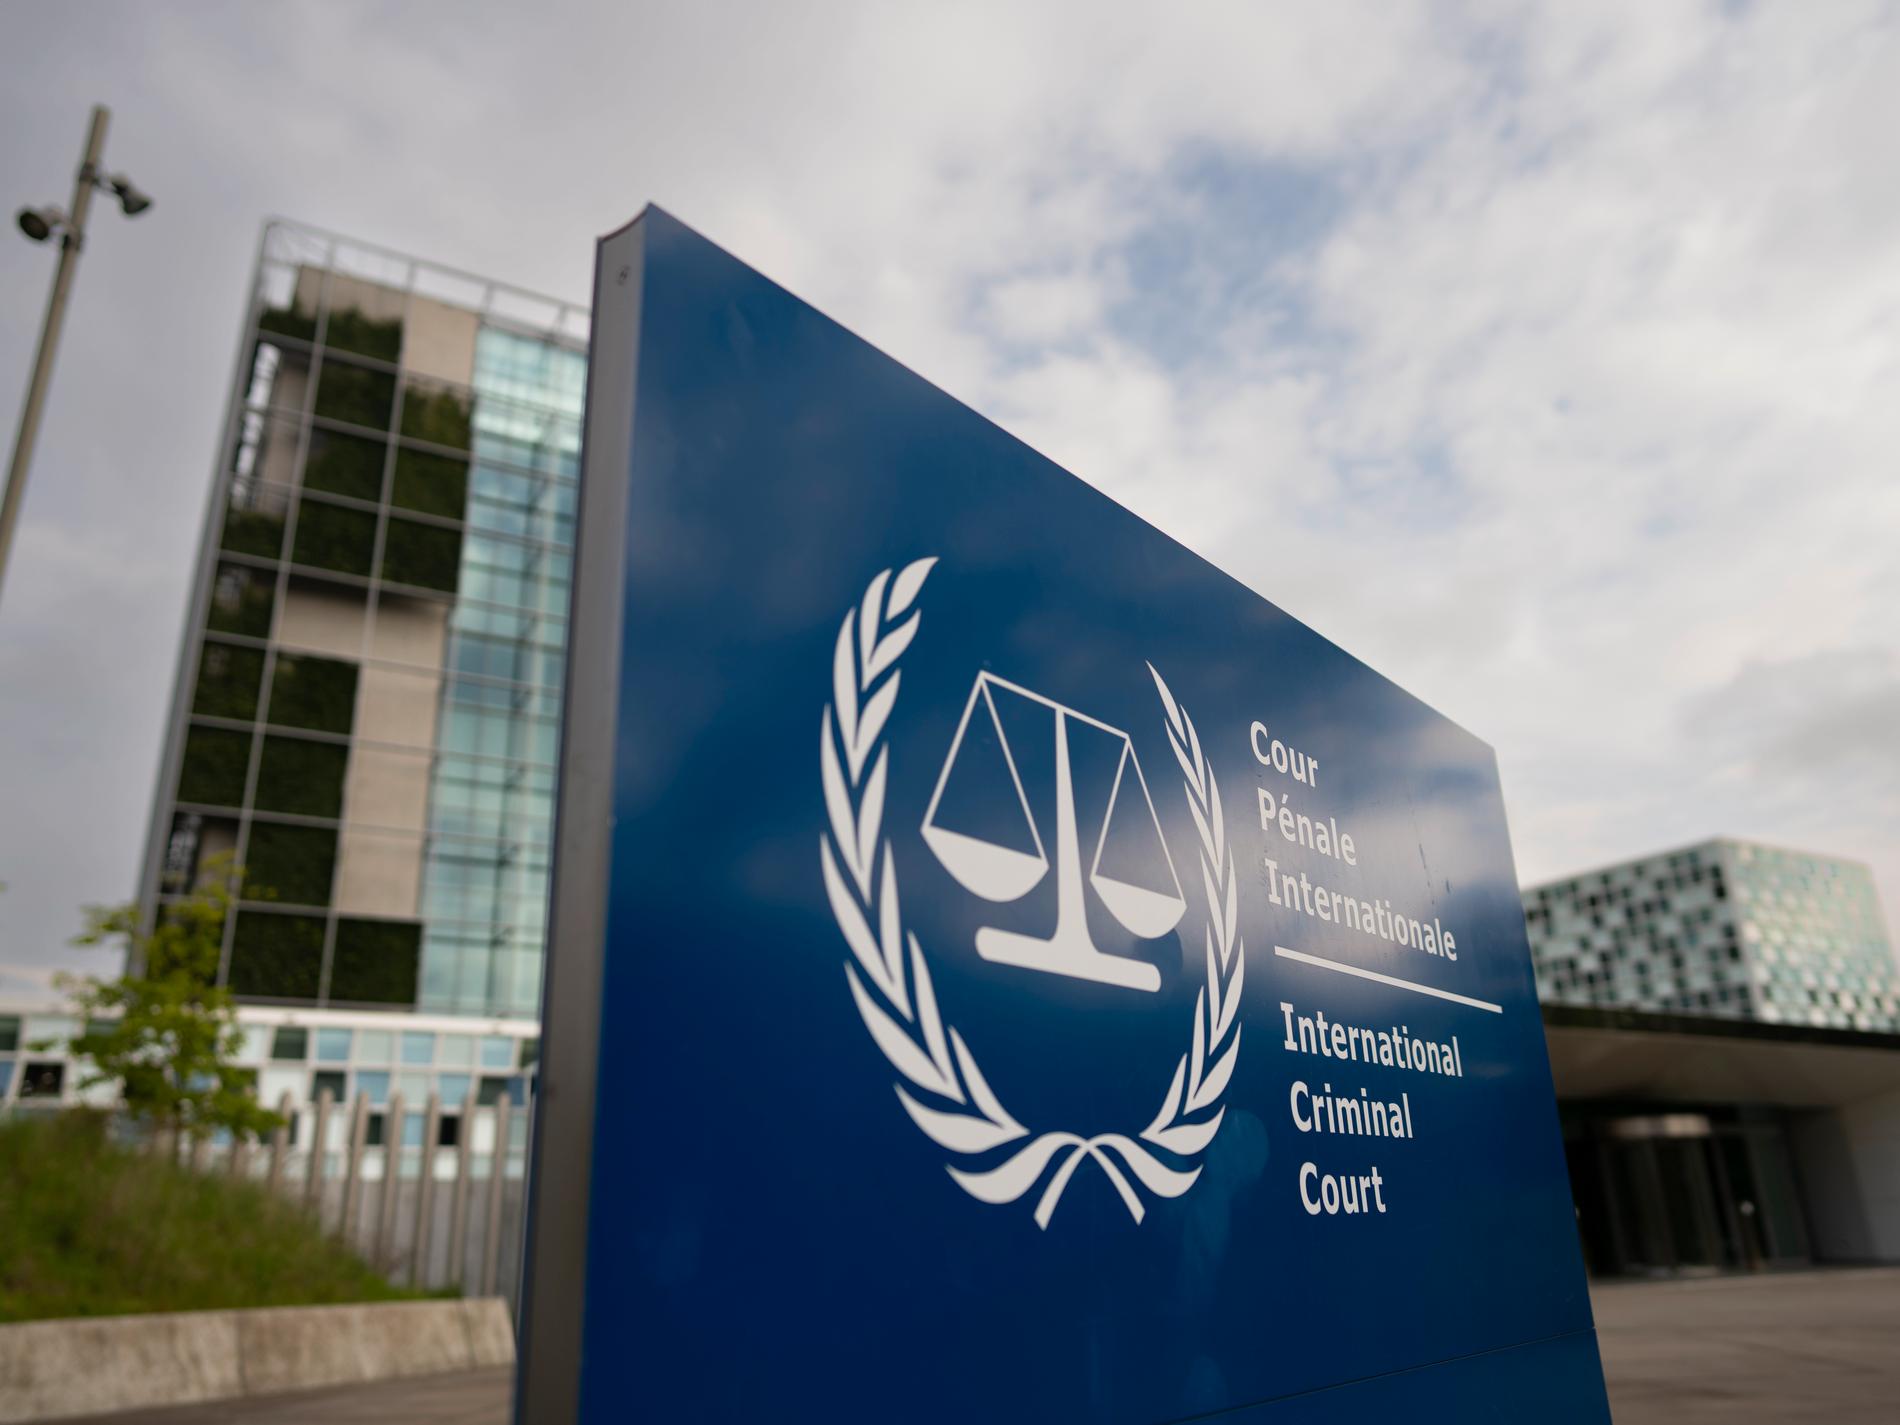 ICC varnar för hot om hämnd